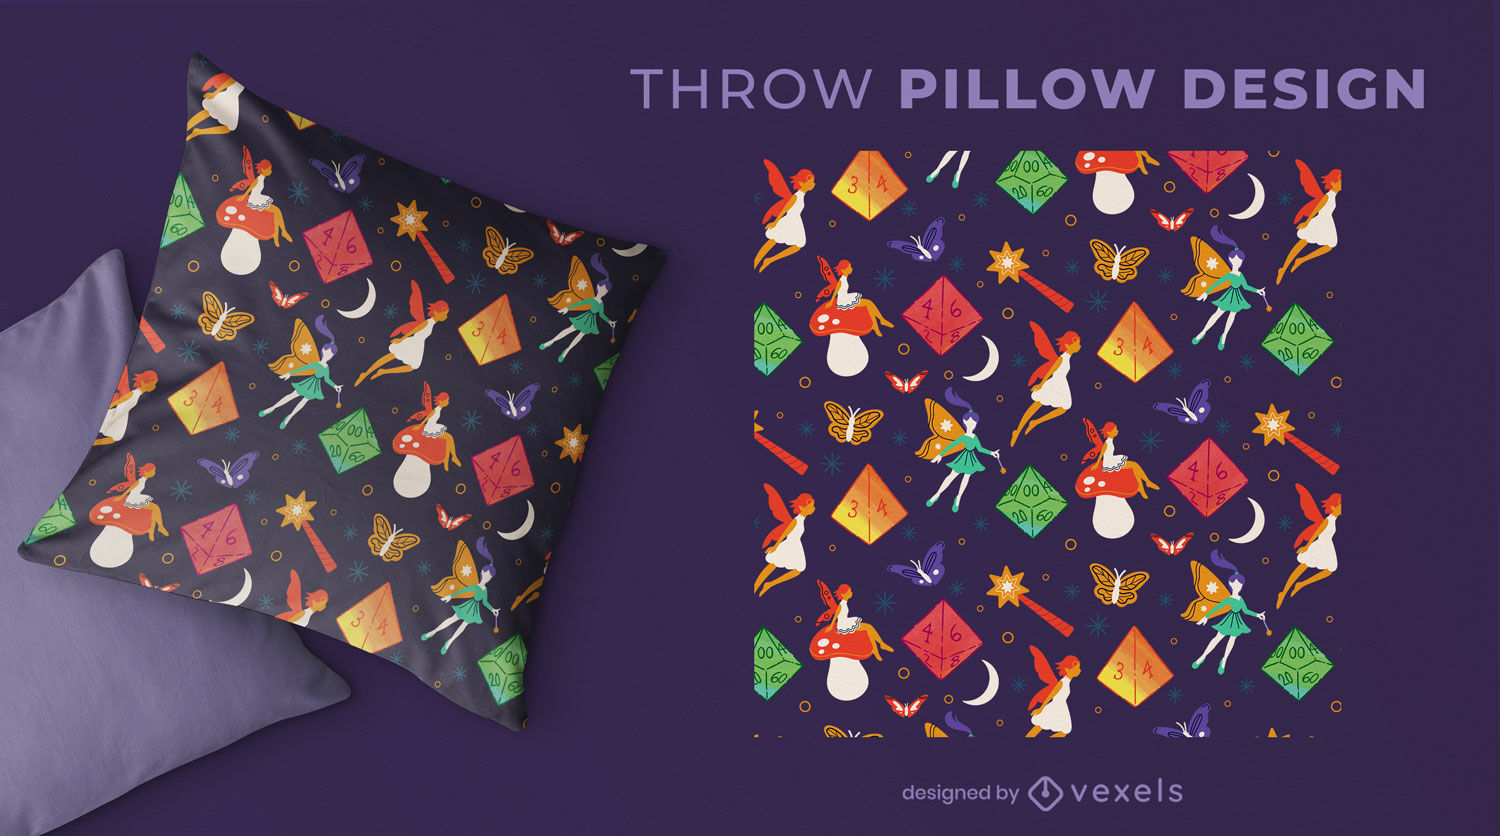 D&D themed pattern throw pillow design